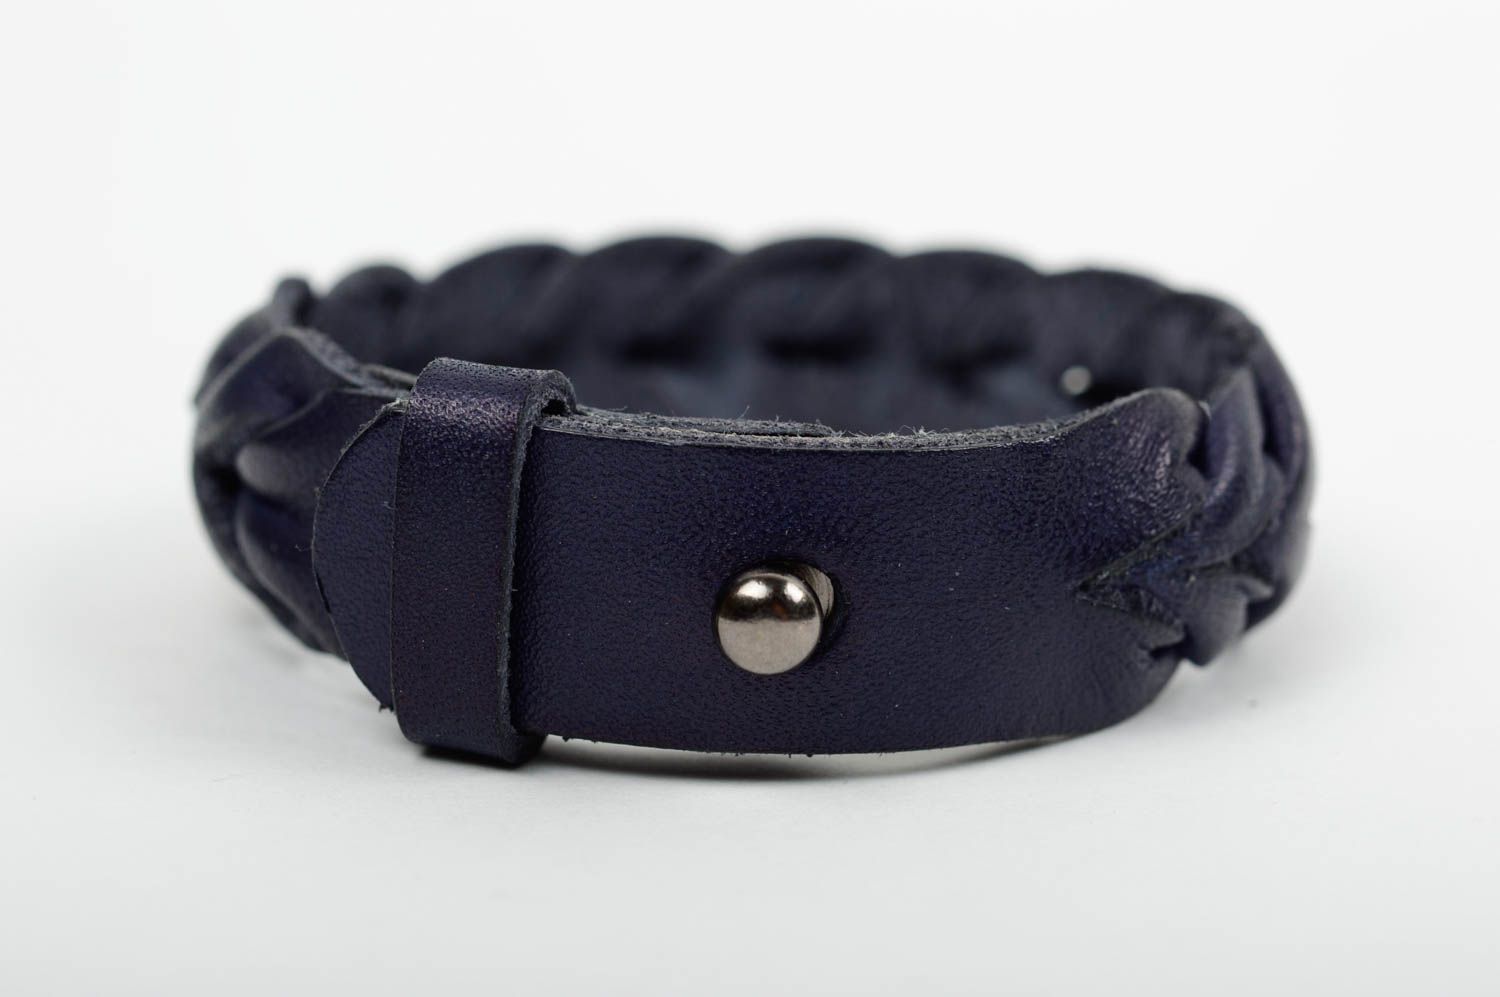 Stylish handmade leather wrist bracelet designer jewelry fashion gift ideas photo 2